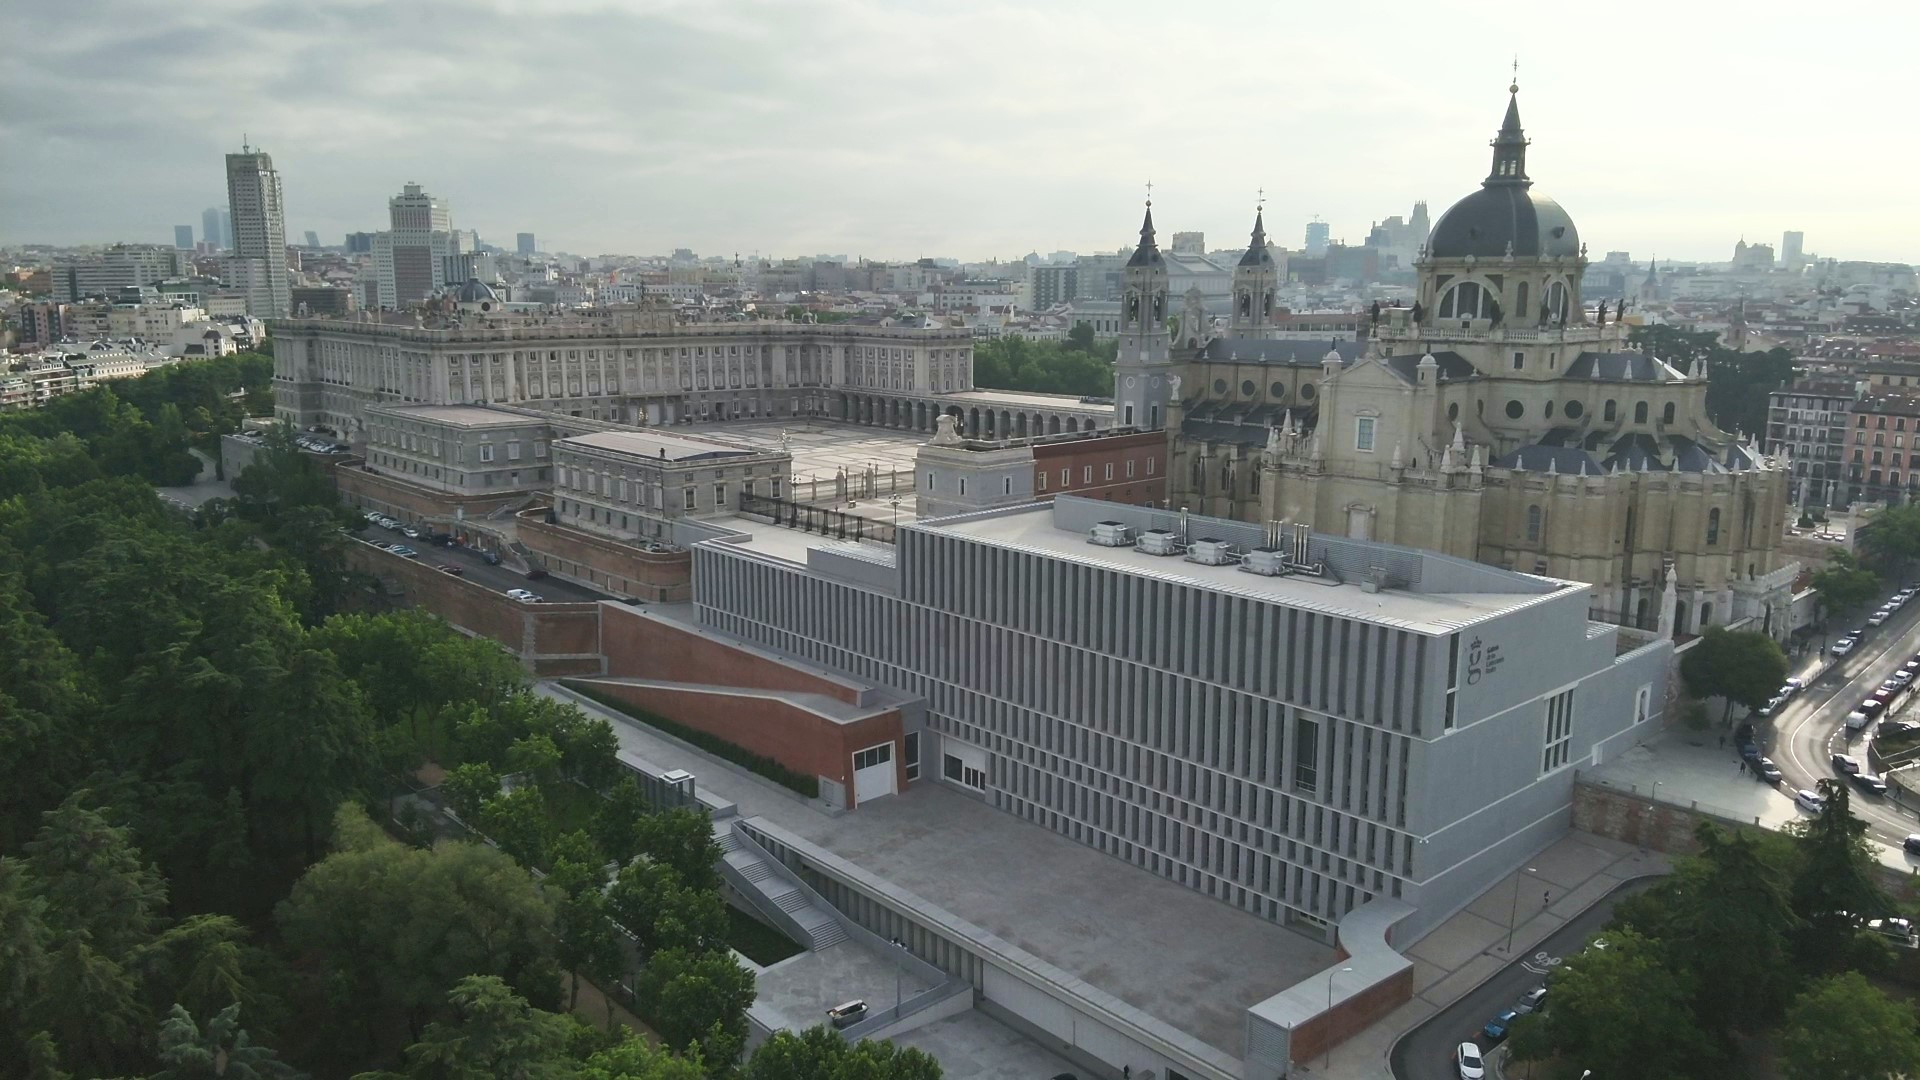  Patrimonio Nacional abre sus Reales Sitios el 25 de julio, festivo en Madrid, y la entrada a la Galería de las Colecciones Reales será gratuita 